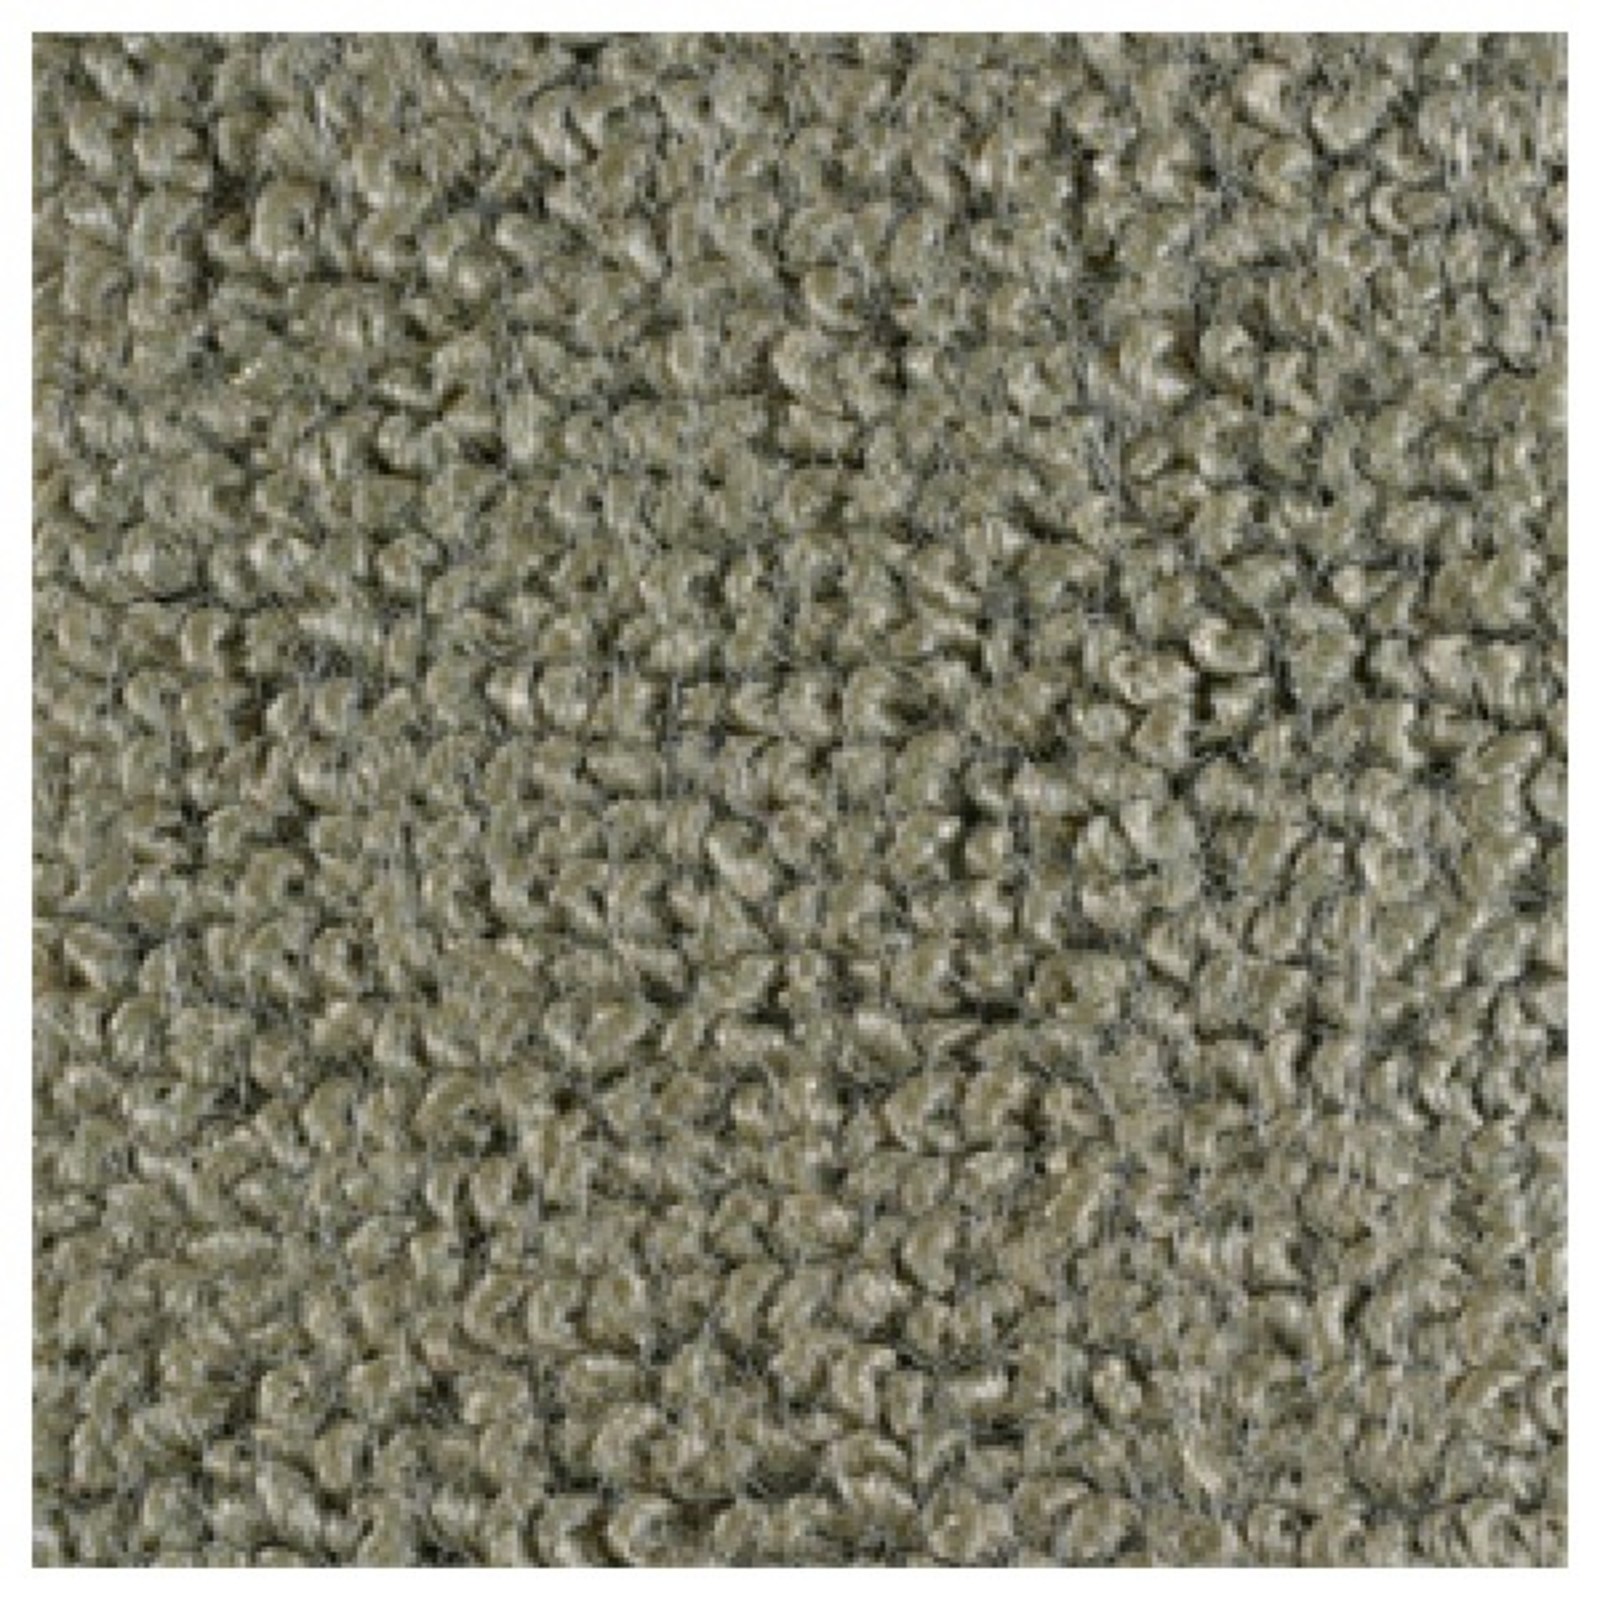 65-6 Kick Panel Carpet CP/FB I/G